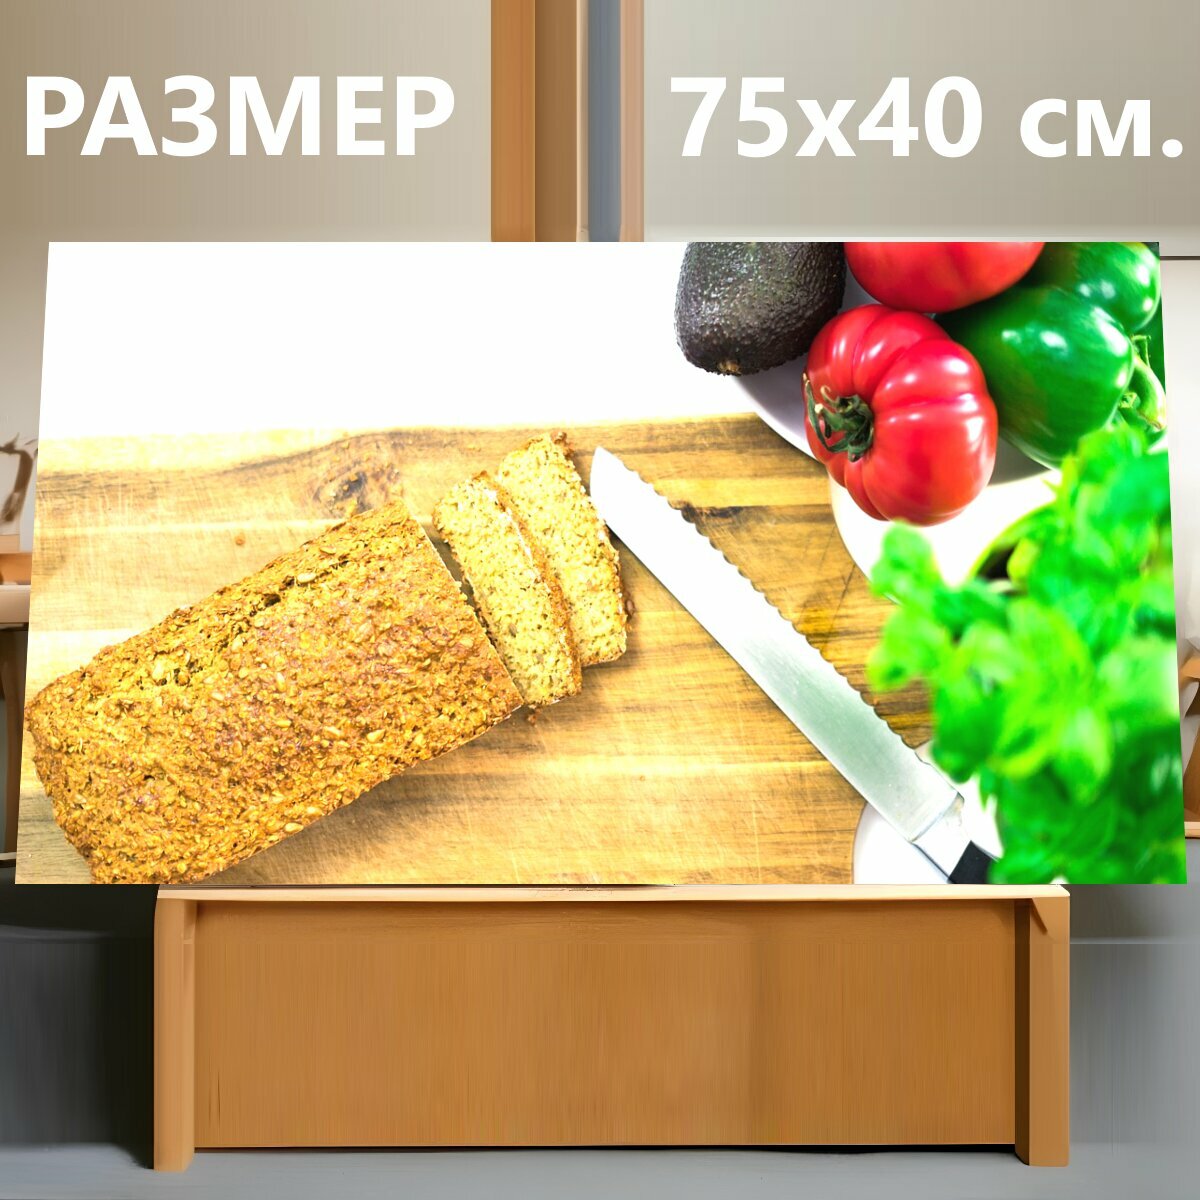 Картина на холсте "Хлеб, кухня, нож" на подрамнике 75х40 см. для интерьера